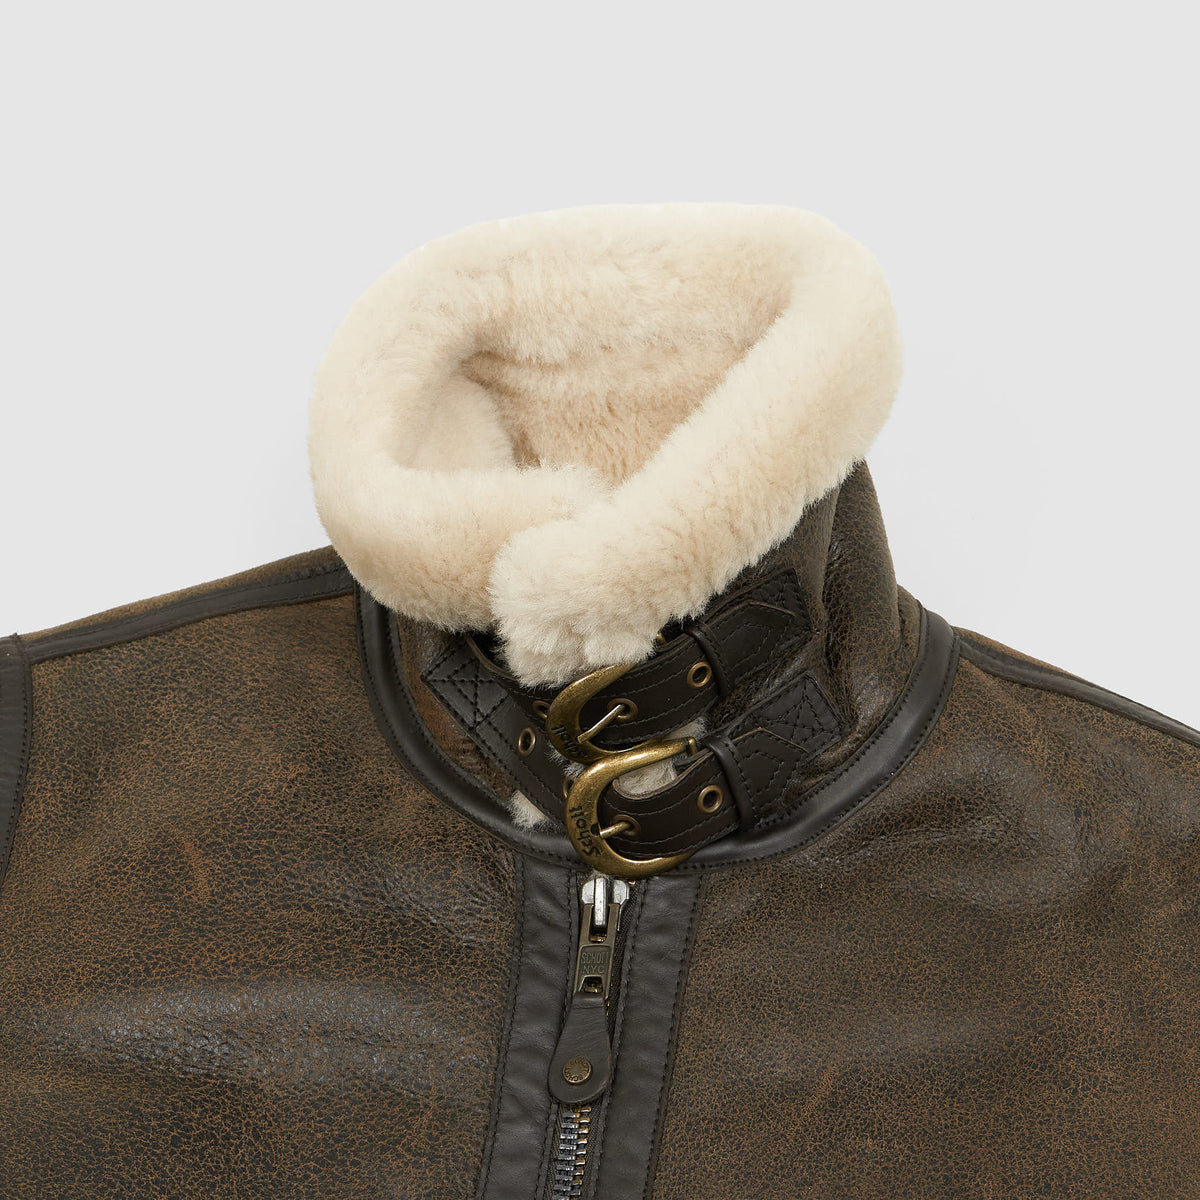 Schott N.Y.C. Ladies B-3 Brown Leather Jacket